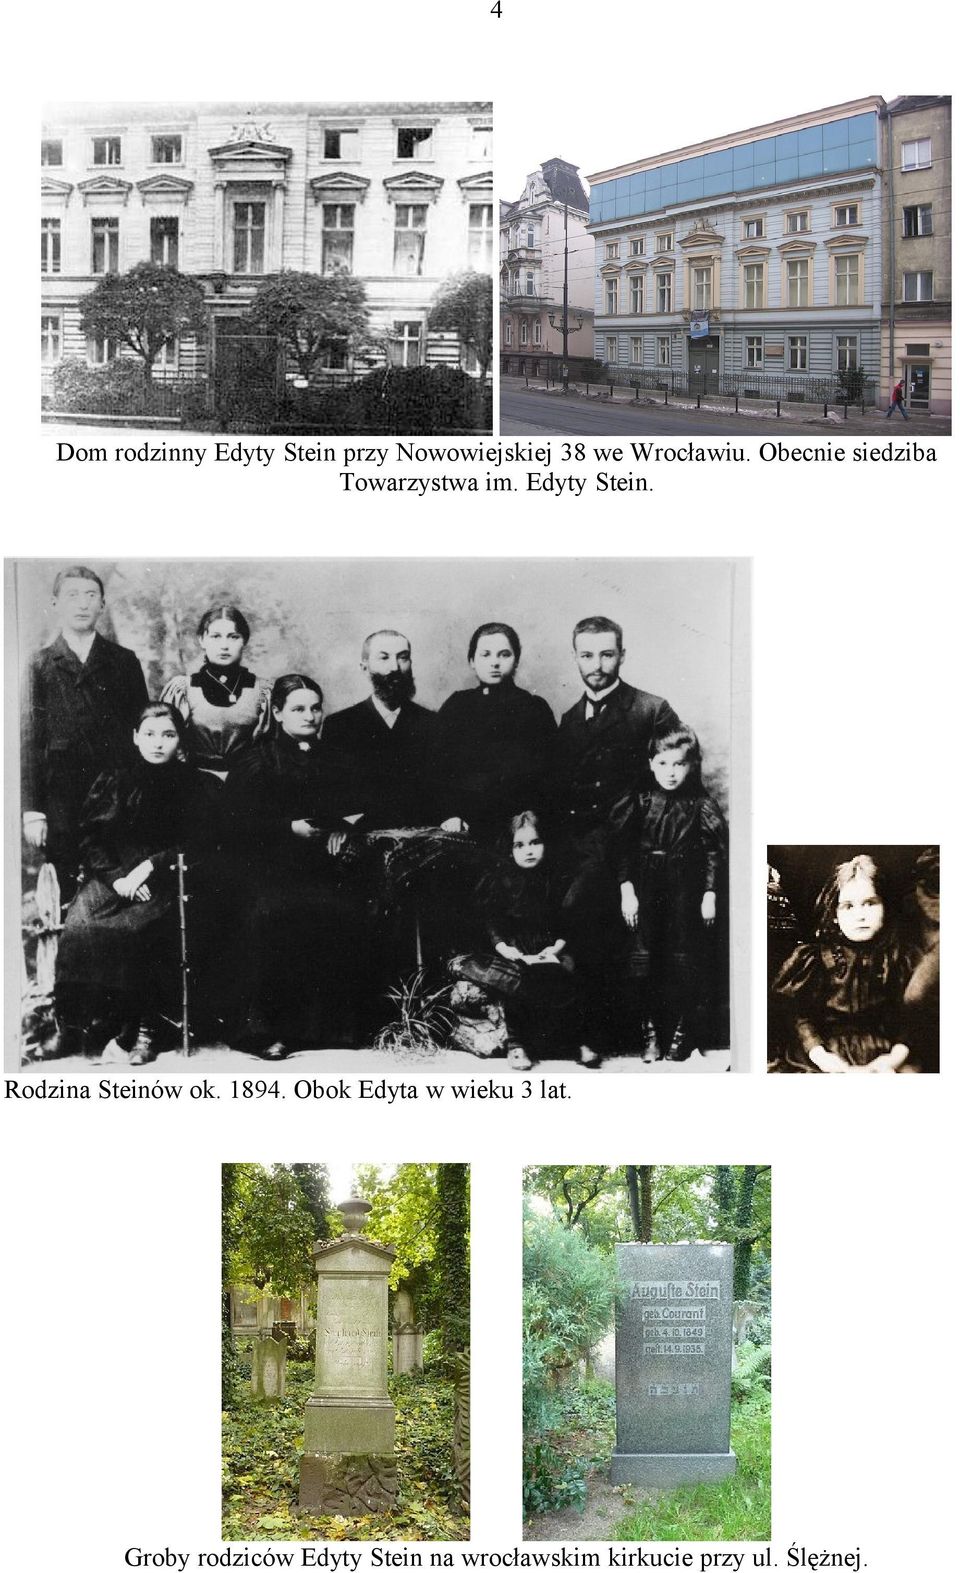 Rodzina Steinów ok. 1894. Obok Edyta w wieku 3 lat.